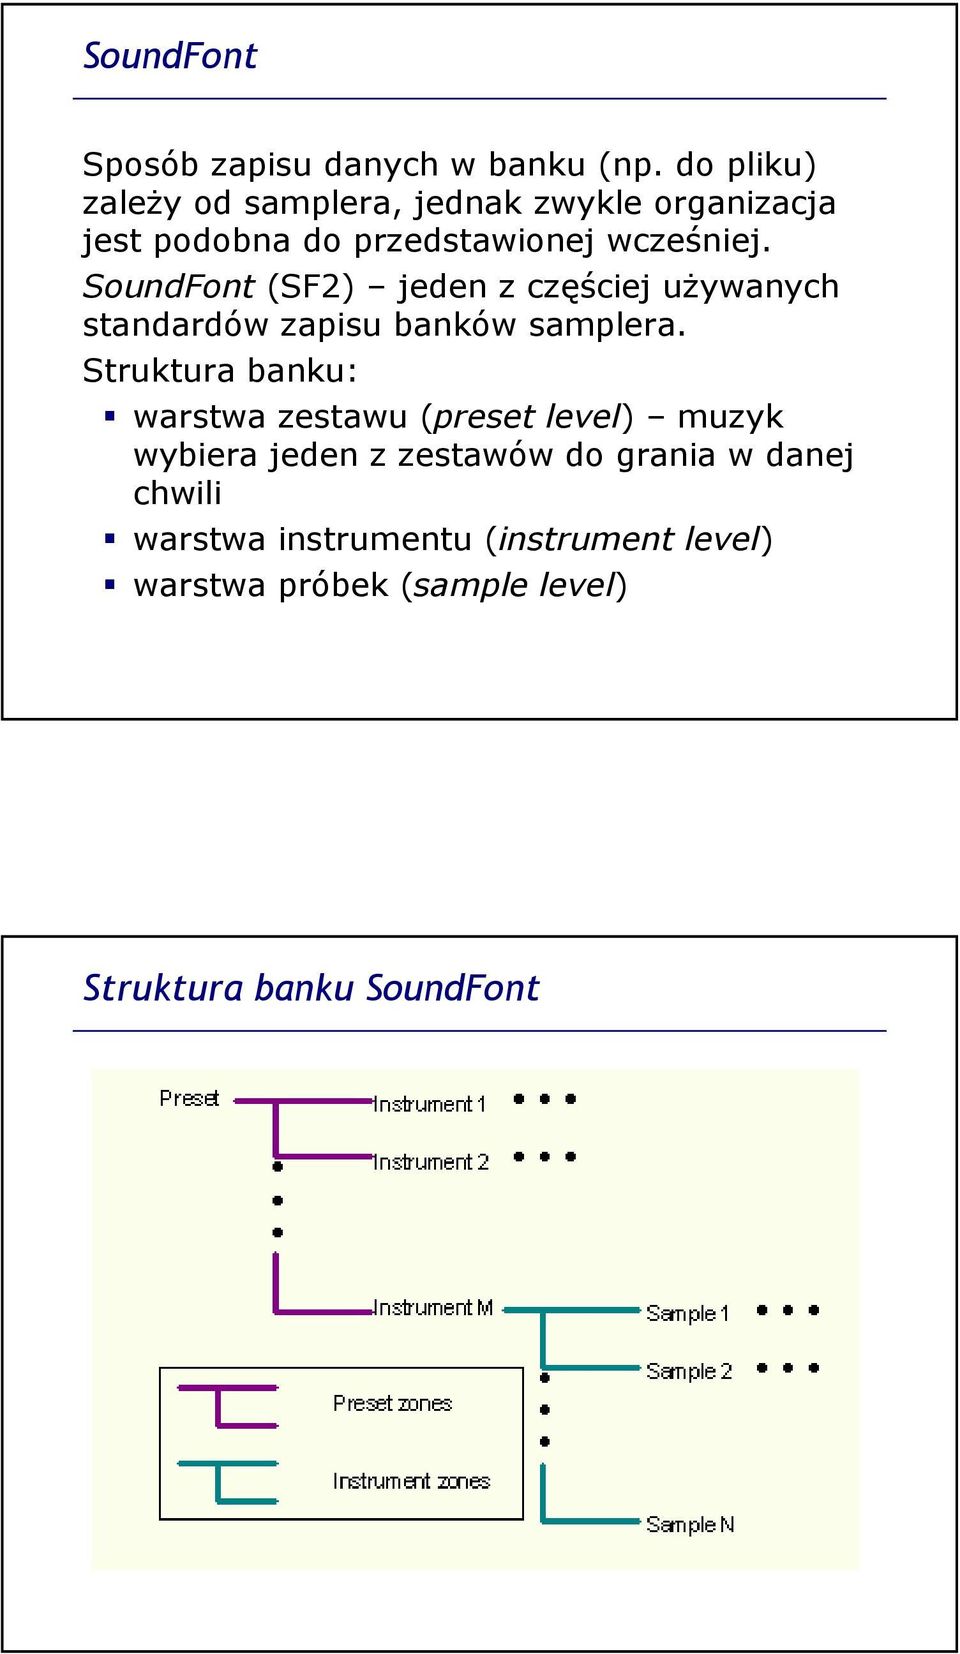 SoundFont (SF2) jeden z częściej używanych standardów zapisu banków samplera.